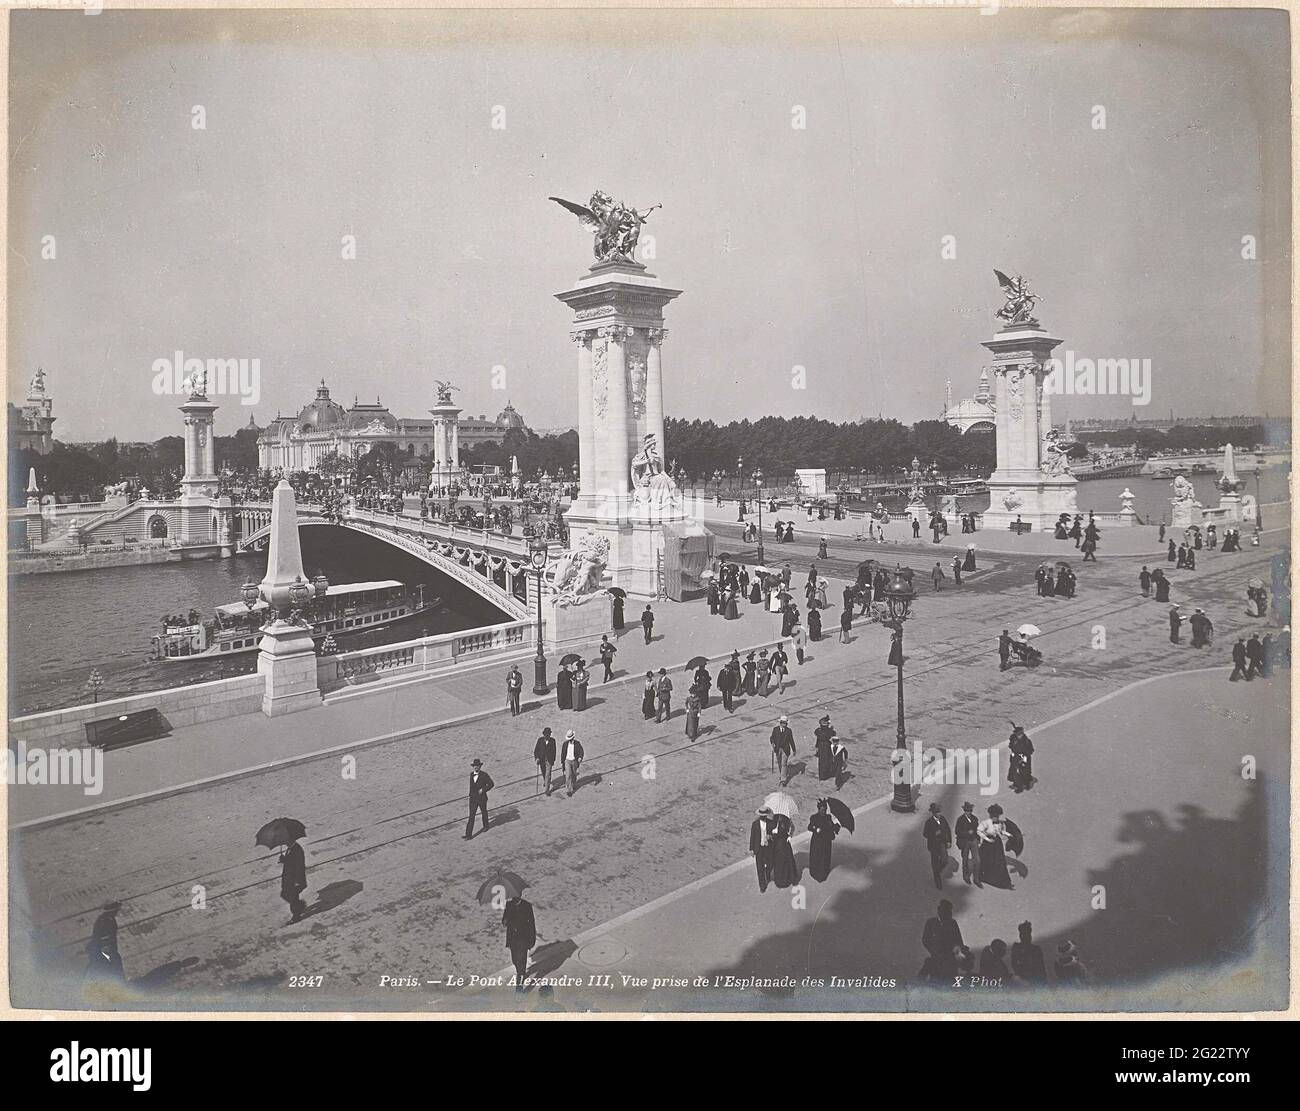 Alexandre III Pont de Seine, Parijs; 2347 le Pont Alexandre III, une vue prise de l'Esplanade des invalides. Banque D'Images